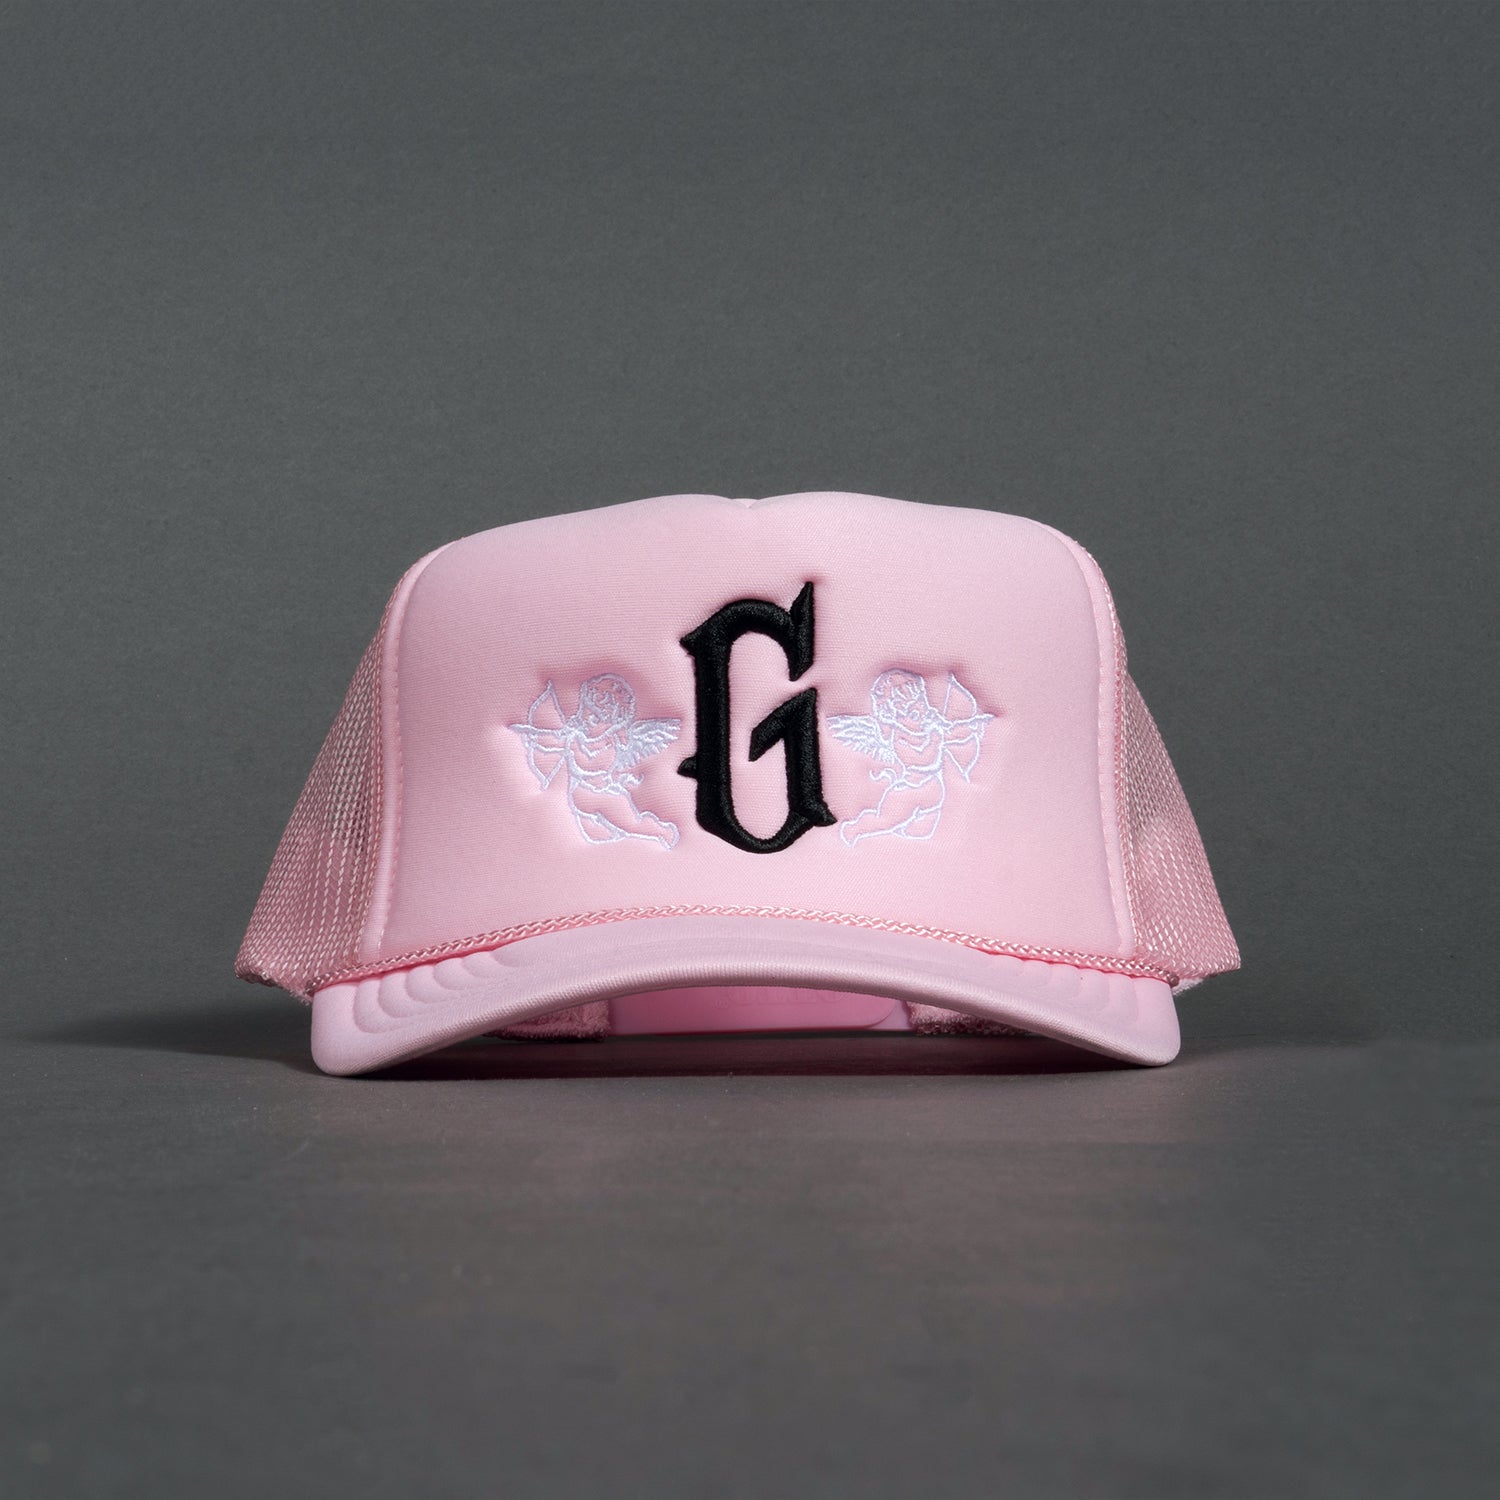 G Angel Trucker Hat - Pink